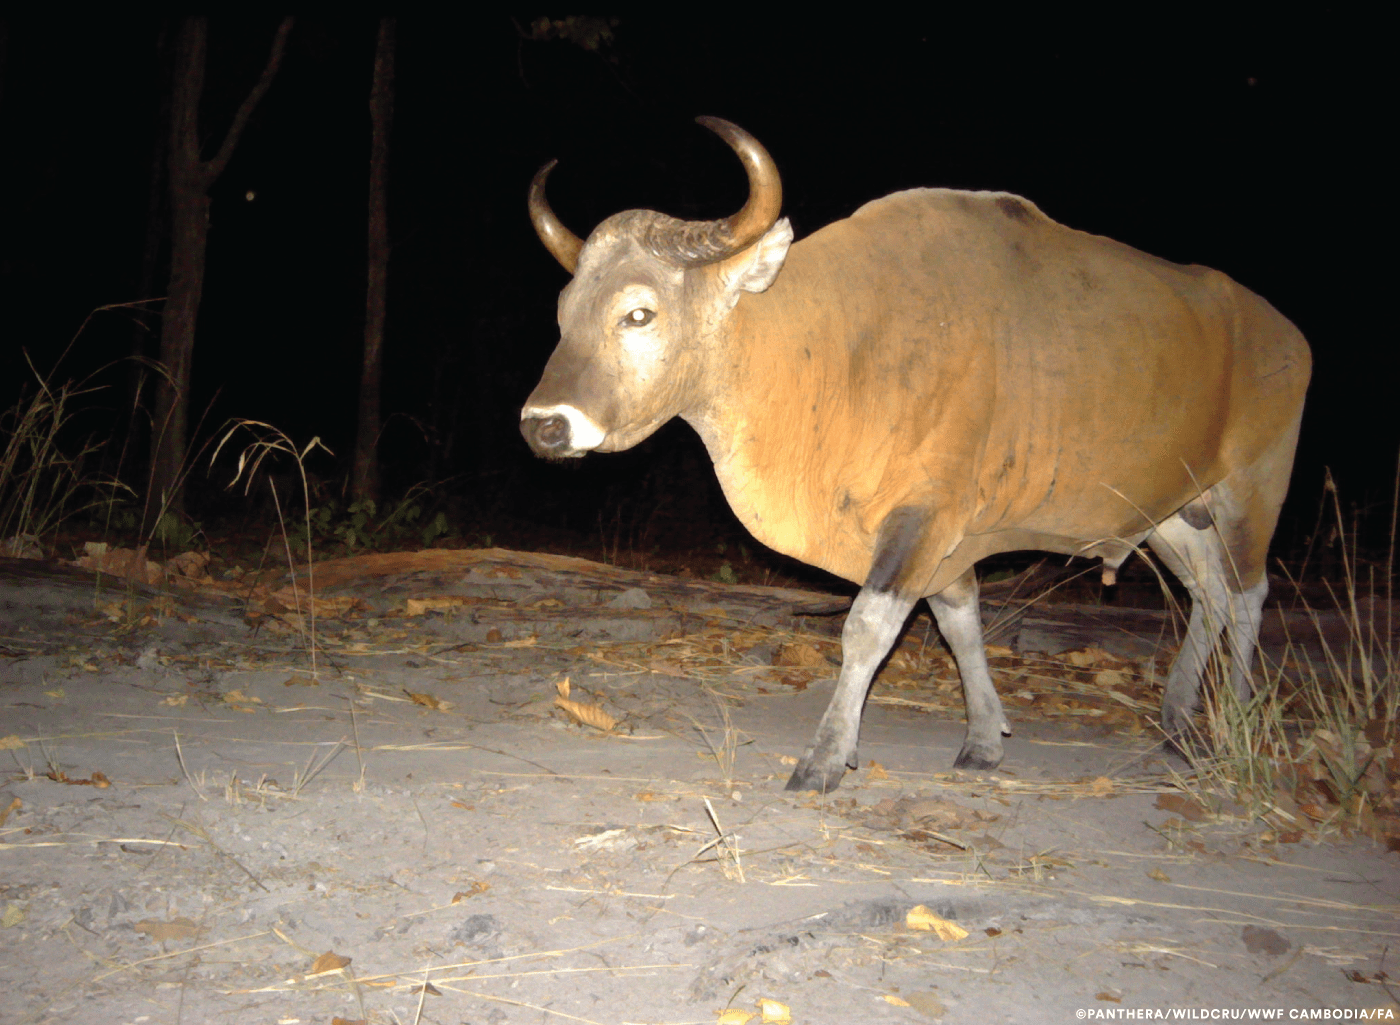 A banteng. (Courtesy Panthera/WildCRU/WWF Cambodia/FA)